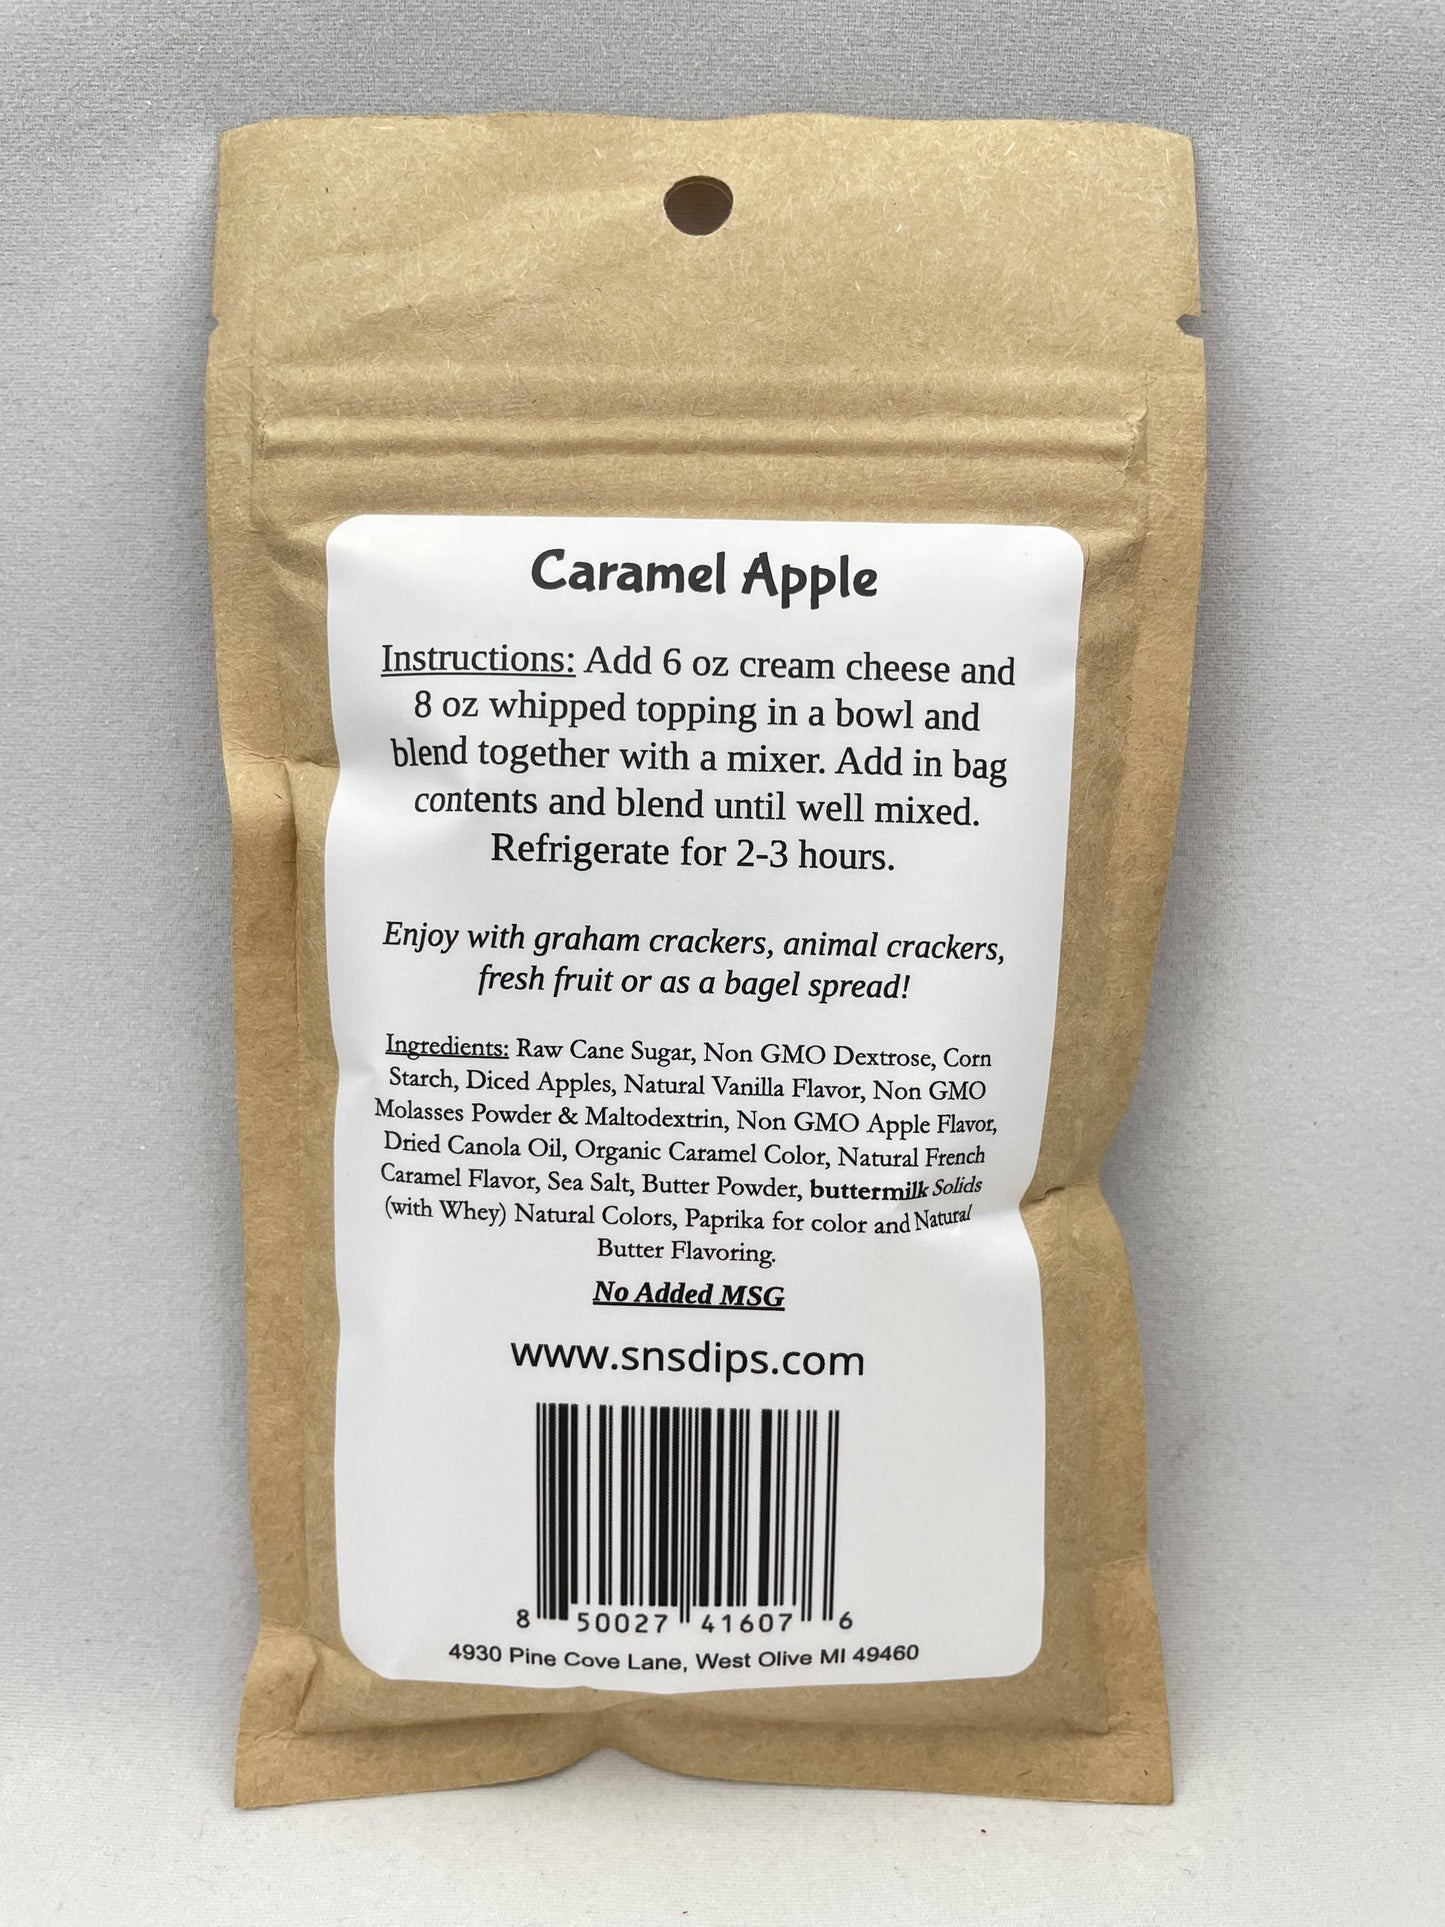 Caramel Apple Dip Mix